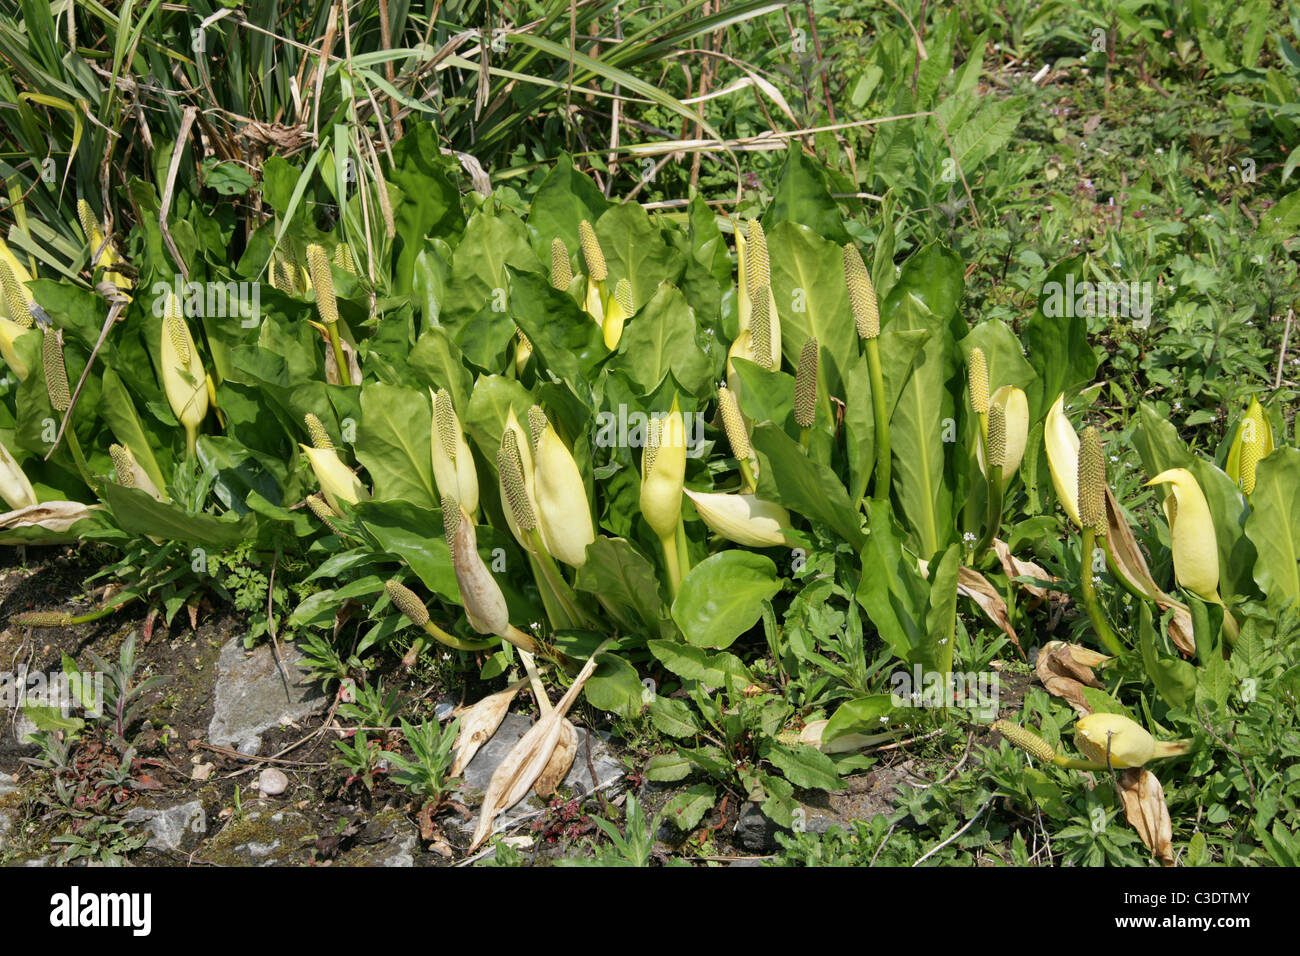 Jaune, choux ou Swamp Lantern, Lysichiton americanus, Araceae. Amérique du Nord, USA, Canada. Banque D'Images